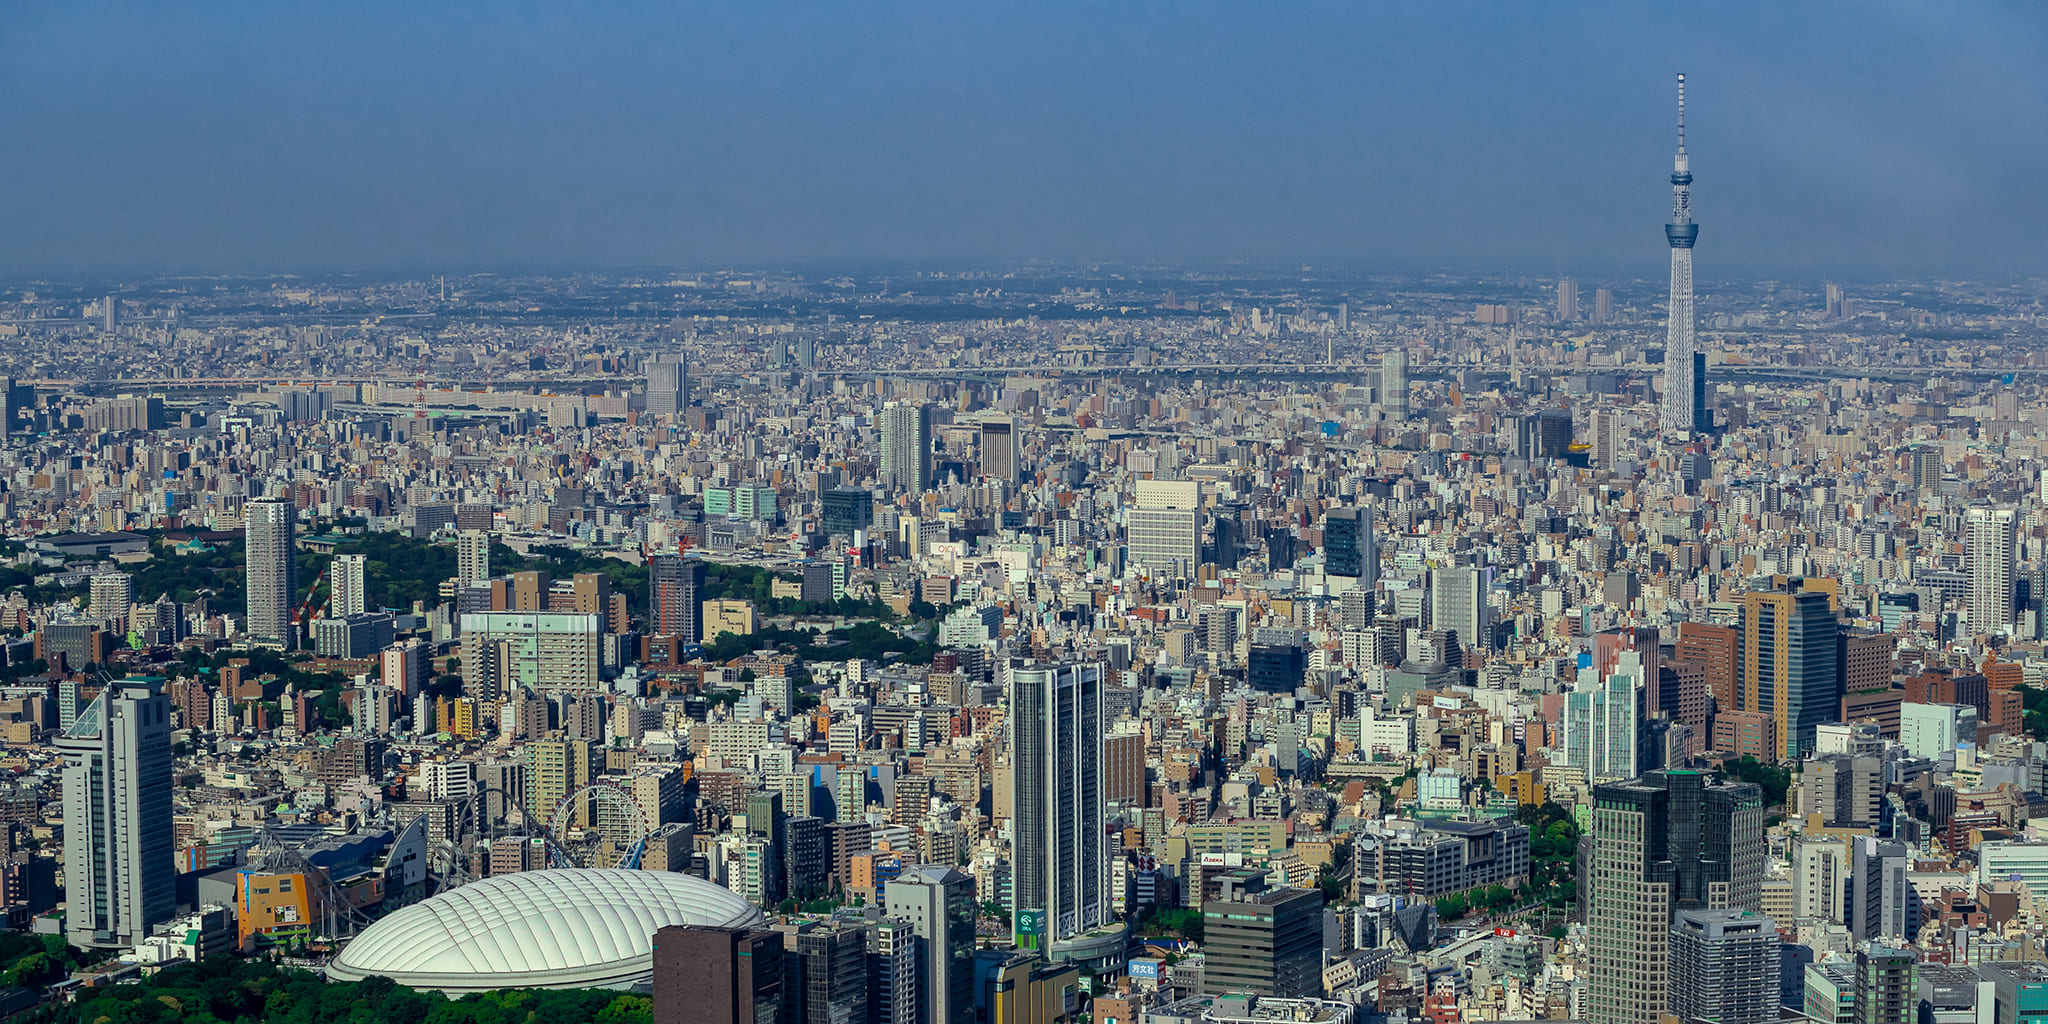 ヘリコプターで東京上空をフライトして見える後楽園